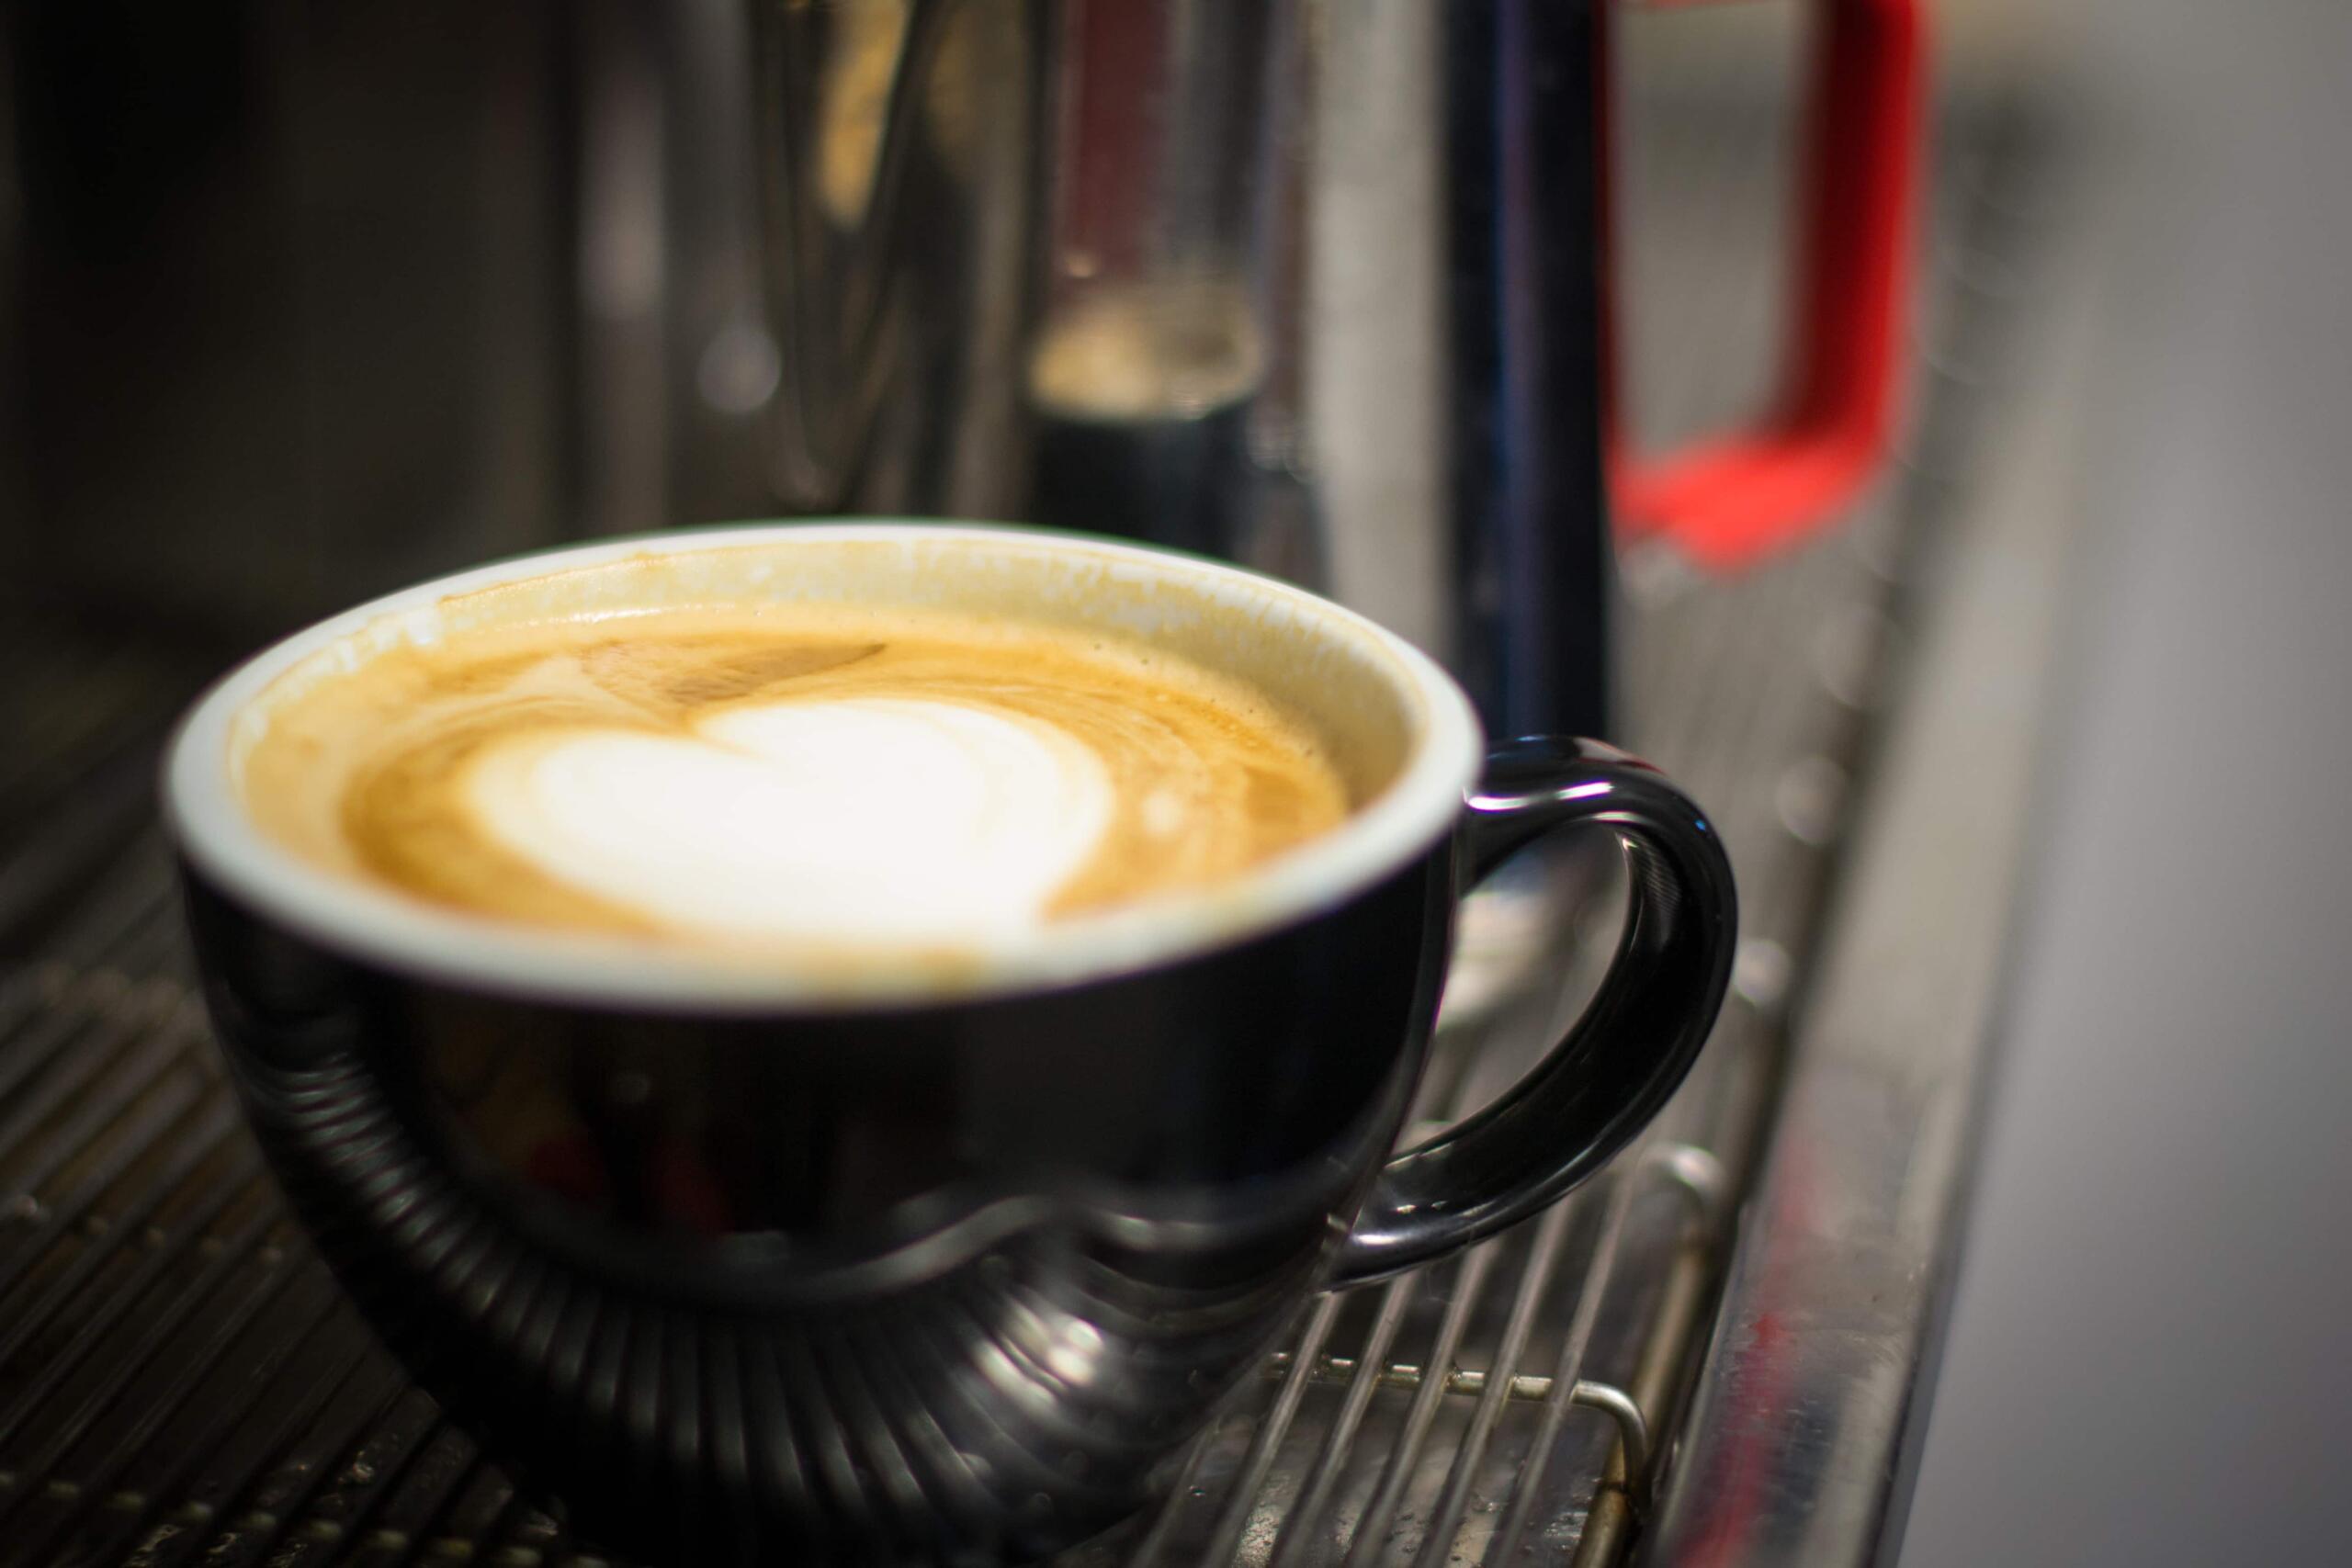 Latte sitting on espresso machine